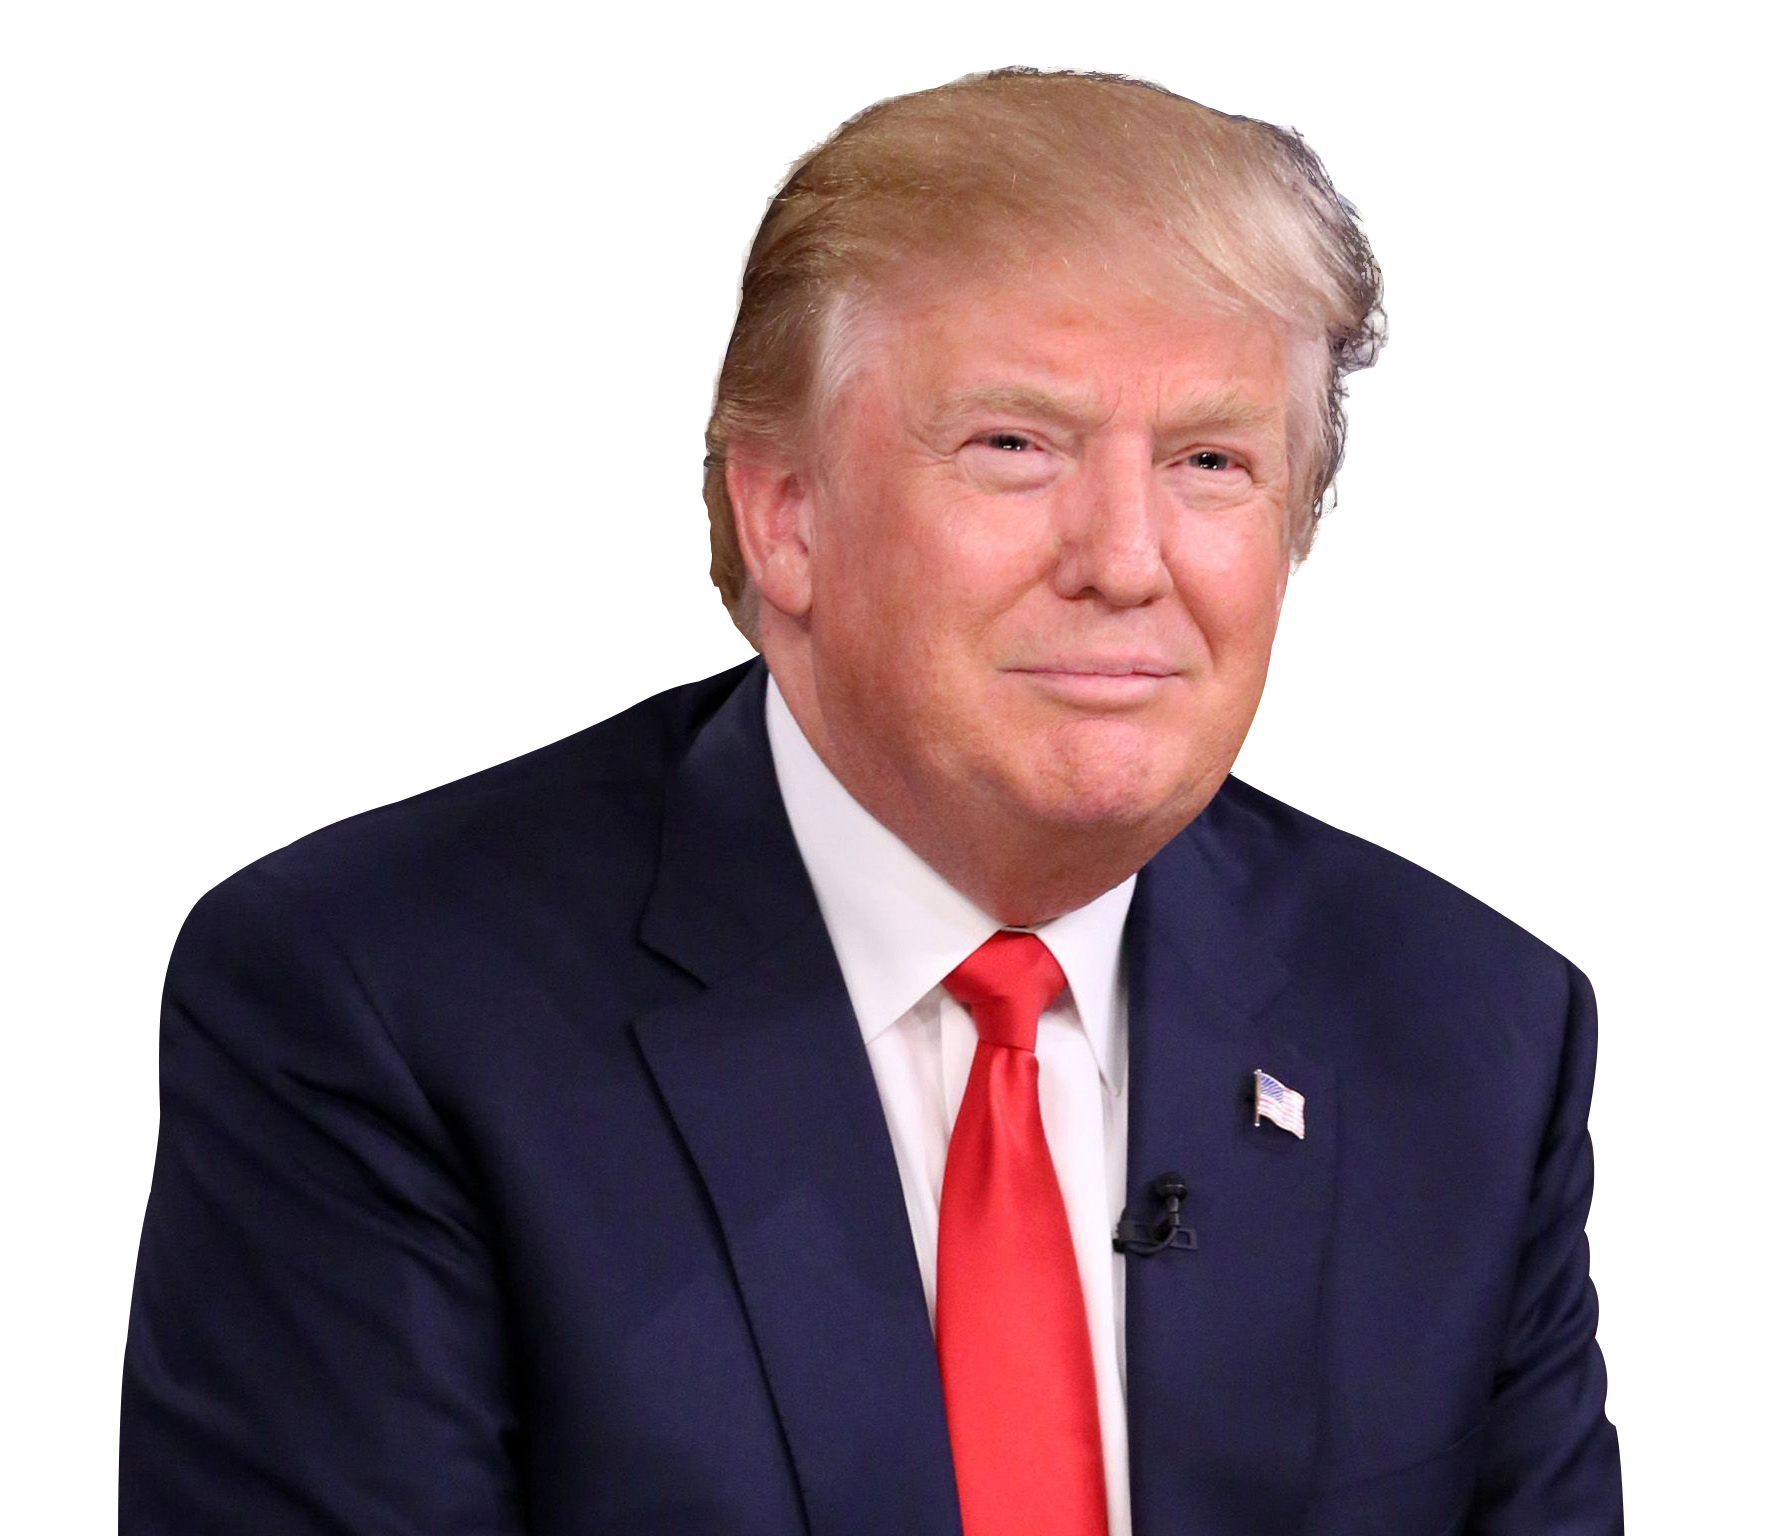 Donald Trump Face PNG Image